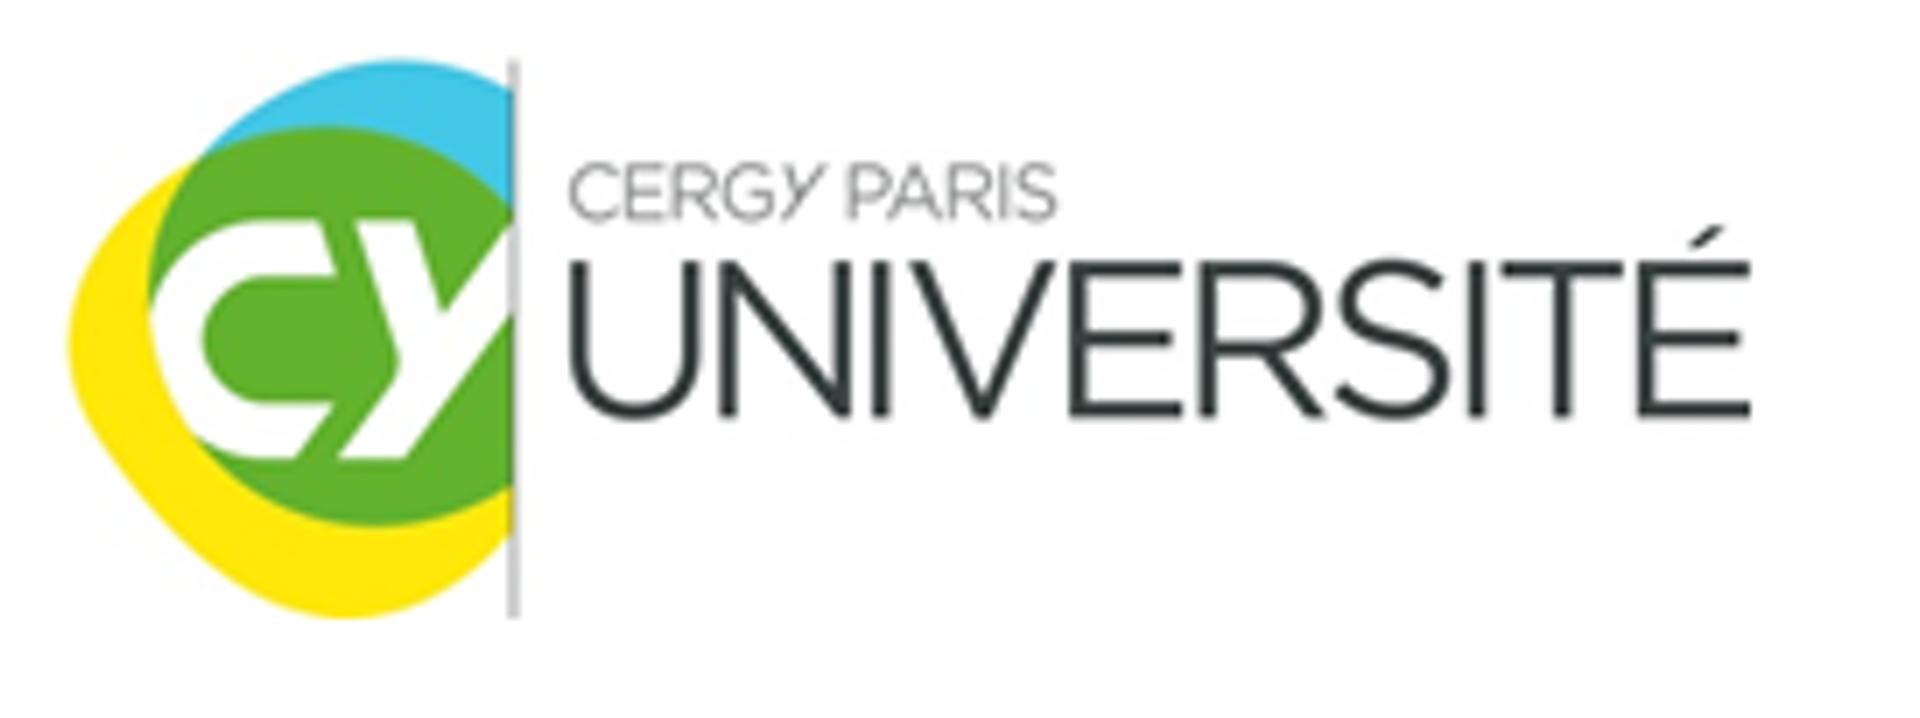 UCY Cergy Paris Université, France